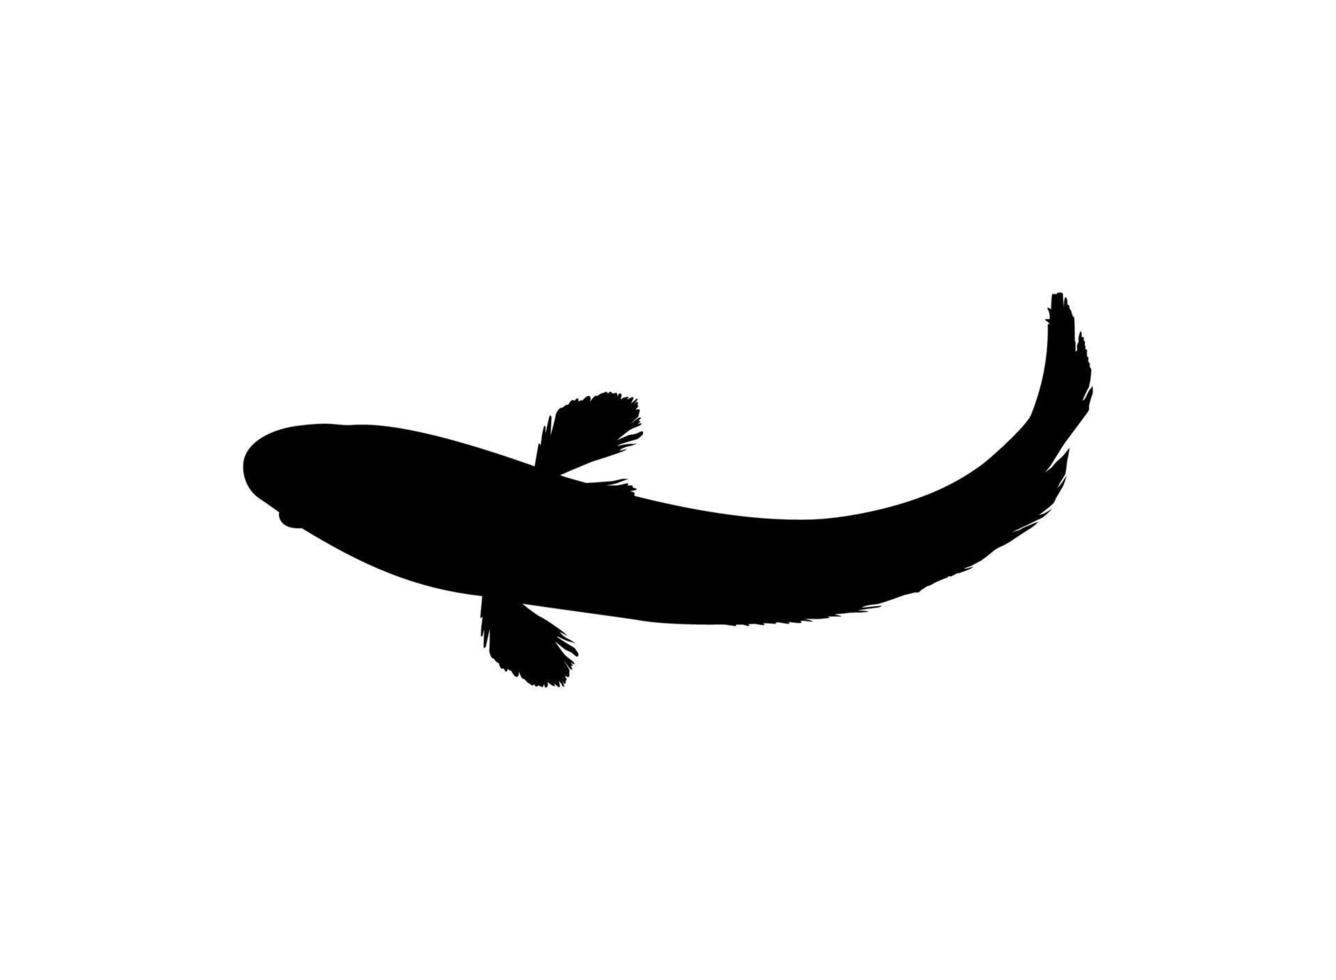 peixe cabeça de cobra, família de peixes perciformes de água doce channidae, silhueta para logotipo, pictograma ou elemento de design gráfico. ilustração vetorial vetor